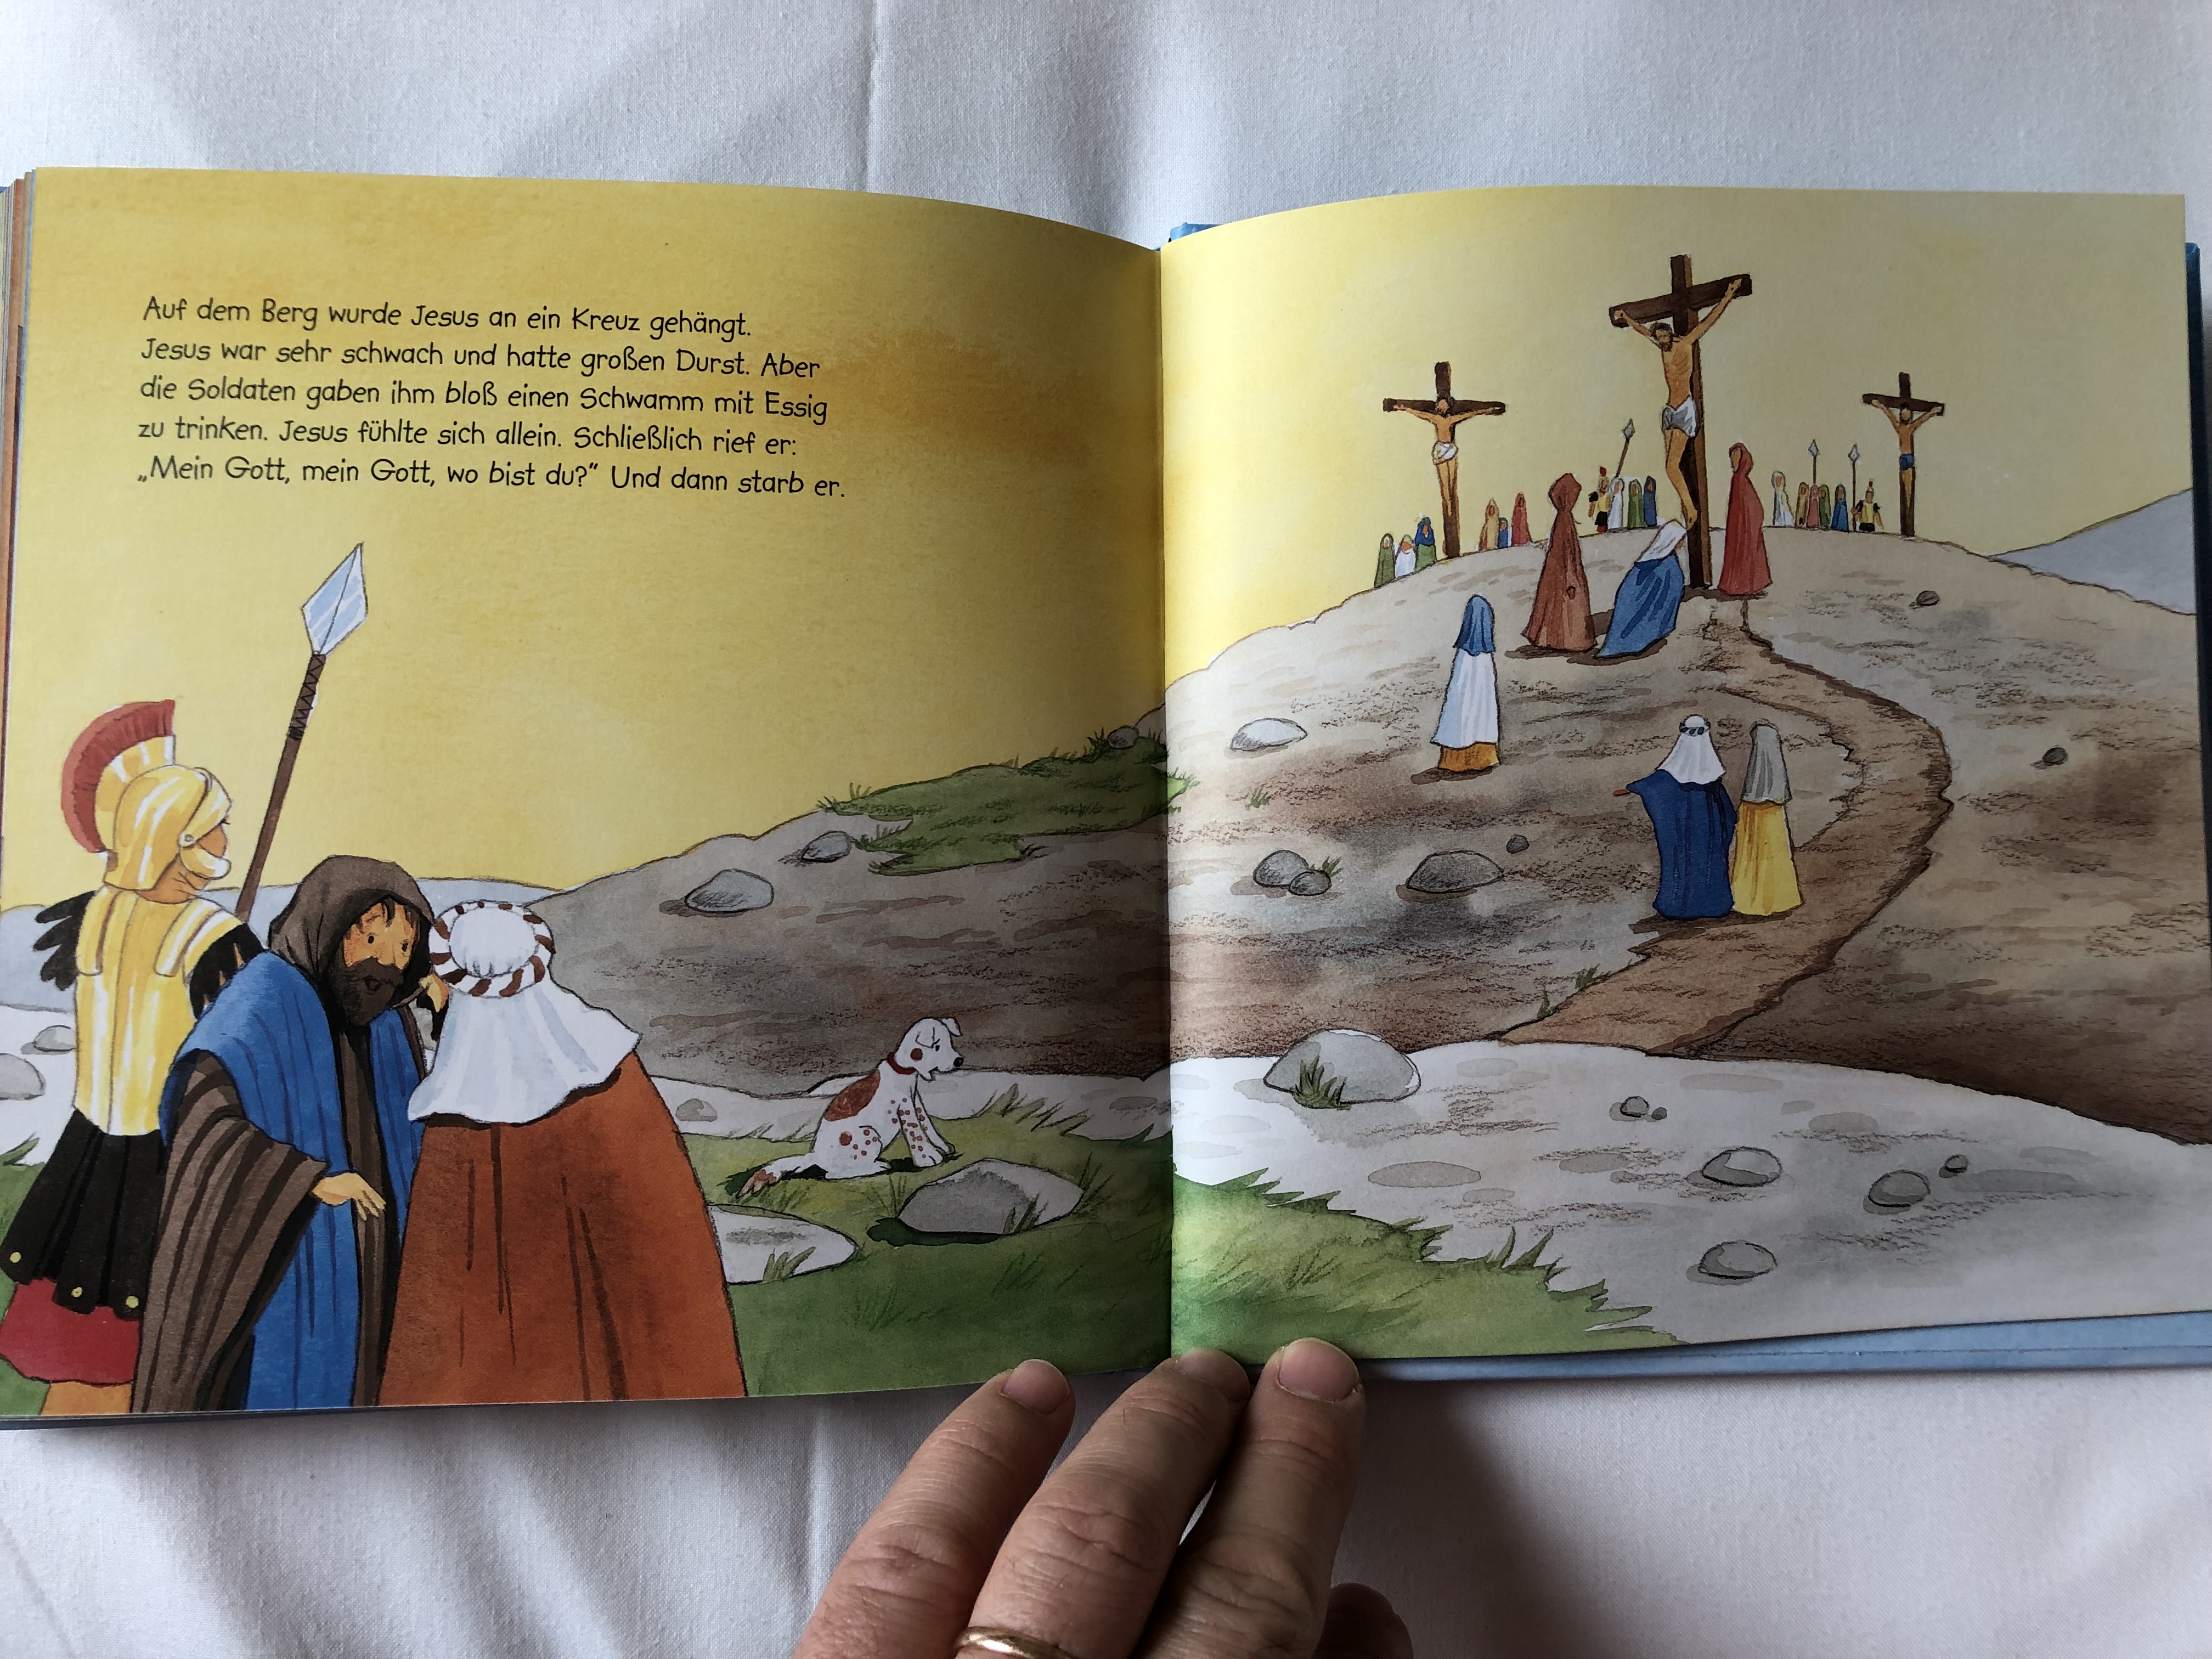 meine-ersten-bibel-geschichten-by-d-rte-beutler-kerstin-m.-schuld-my-first-bible-story-in-german-language-4th-edition-full-color-pages-hardcover-gabriel-verlag-2018-10-.jpg